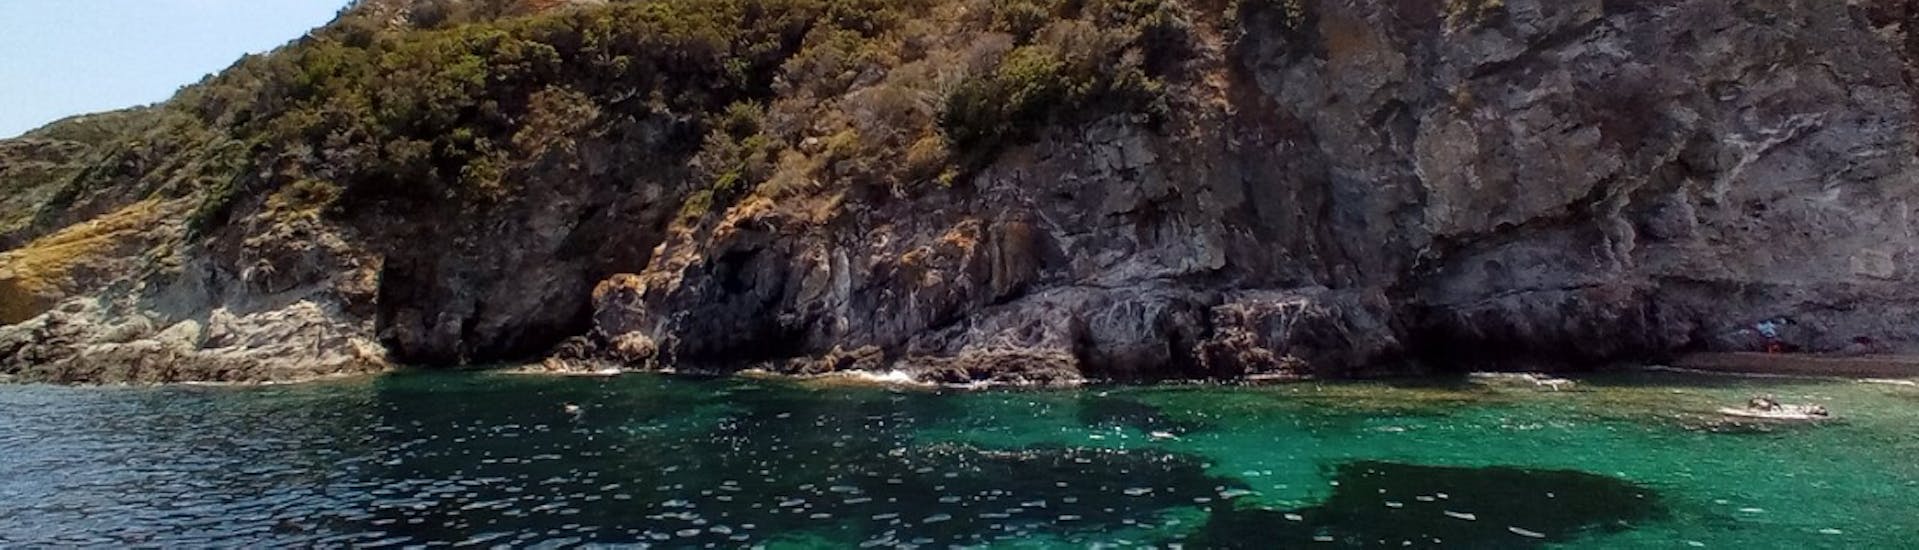 Kliffen die je kunt zien tijdens onze boottocht langs de zuidoostkust van Elba met Motobarca Mickey Mouse Elba.